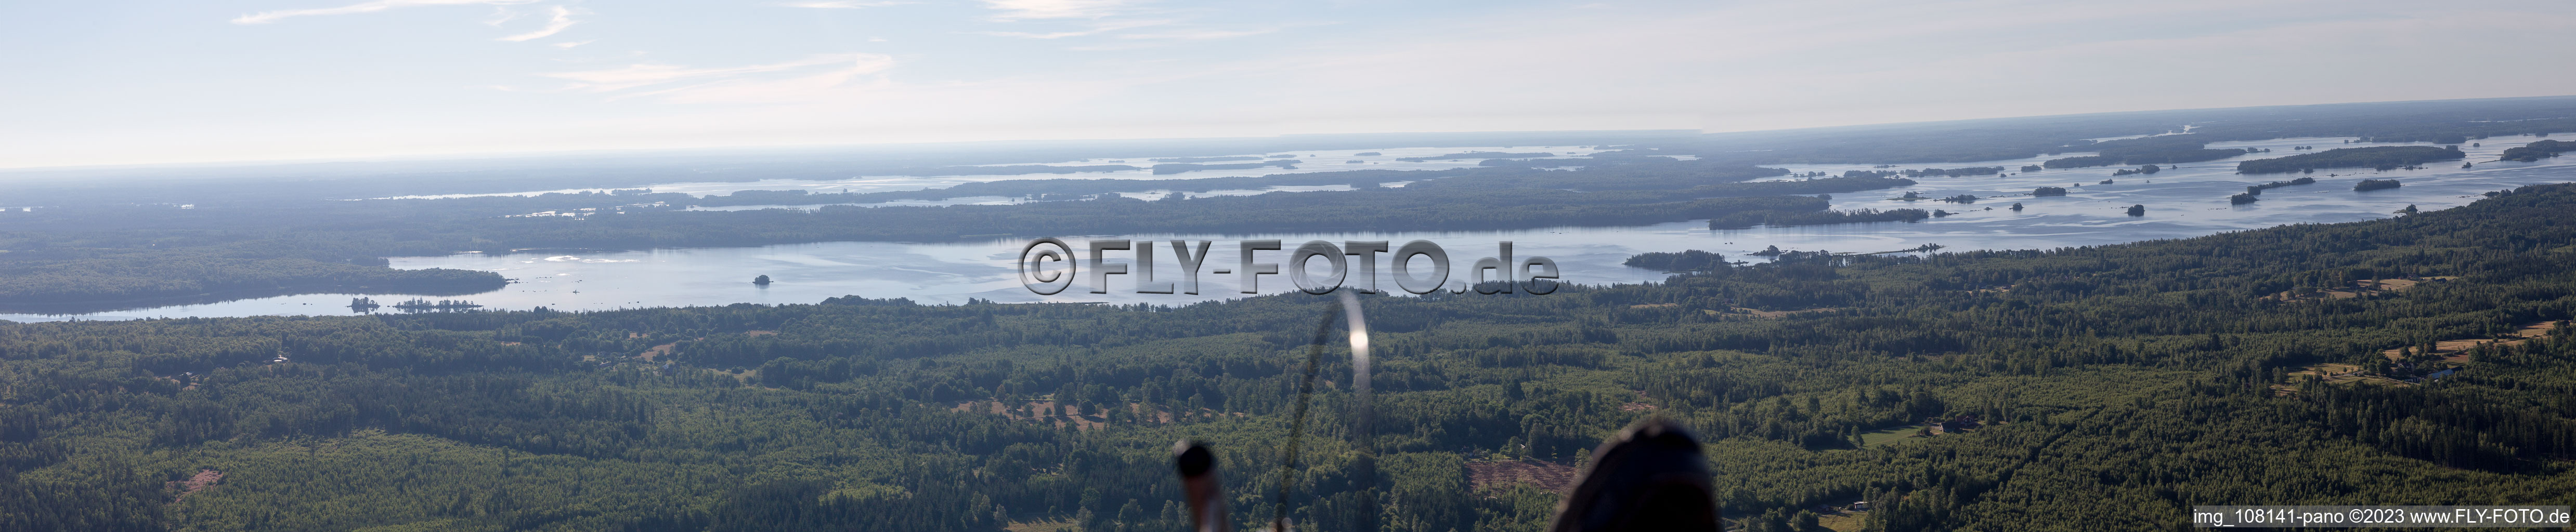 Panorama in Flogmyran im Bundesland Kronoberg, Schweden